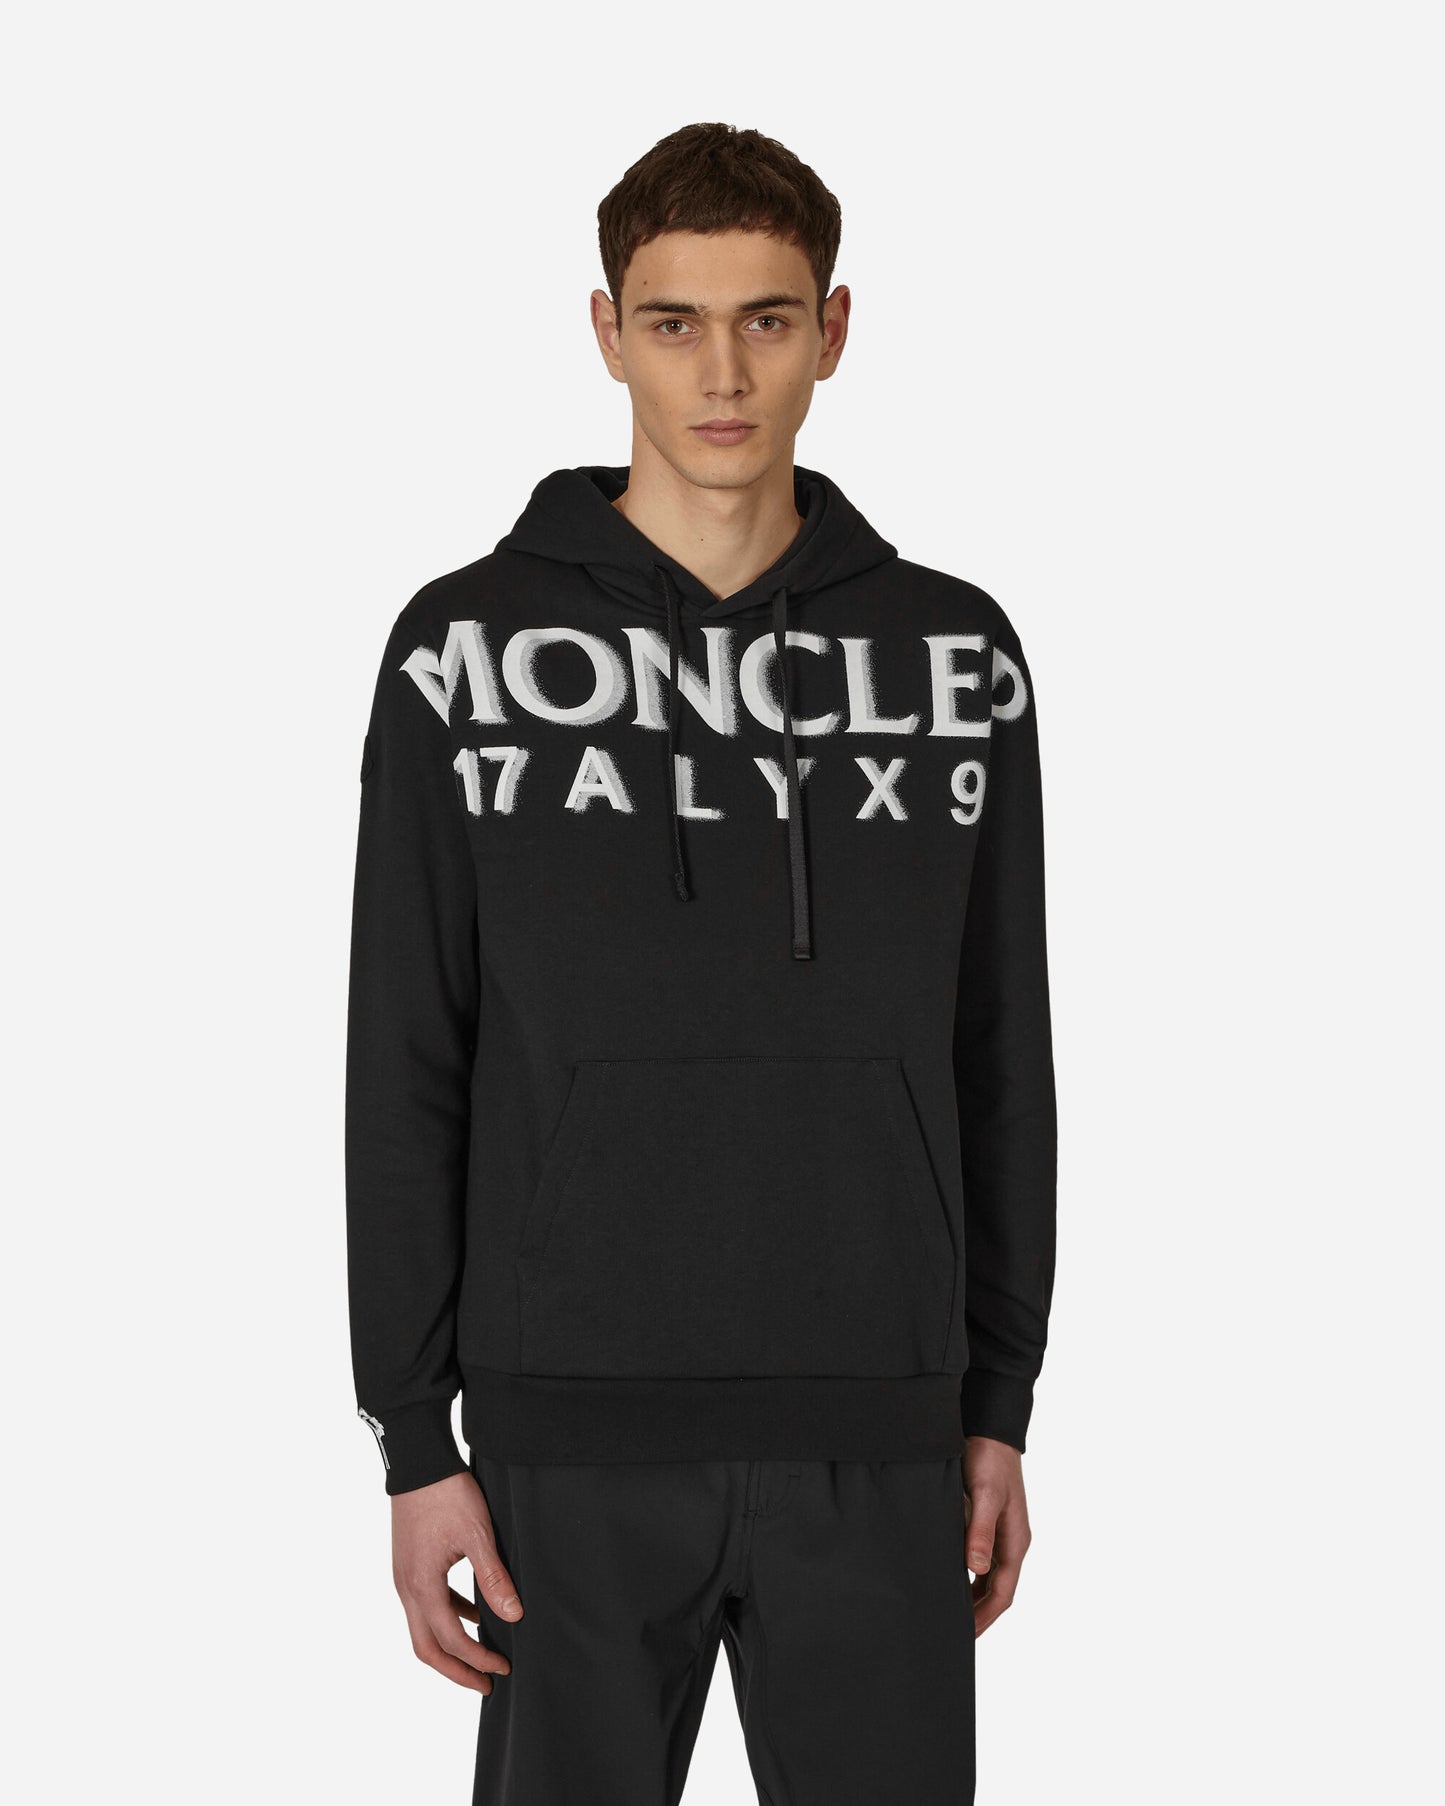 Moncler Genius Hoodie Sweater Black Sweatshirts Hoodies 8G00001M2781 999